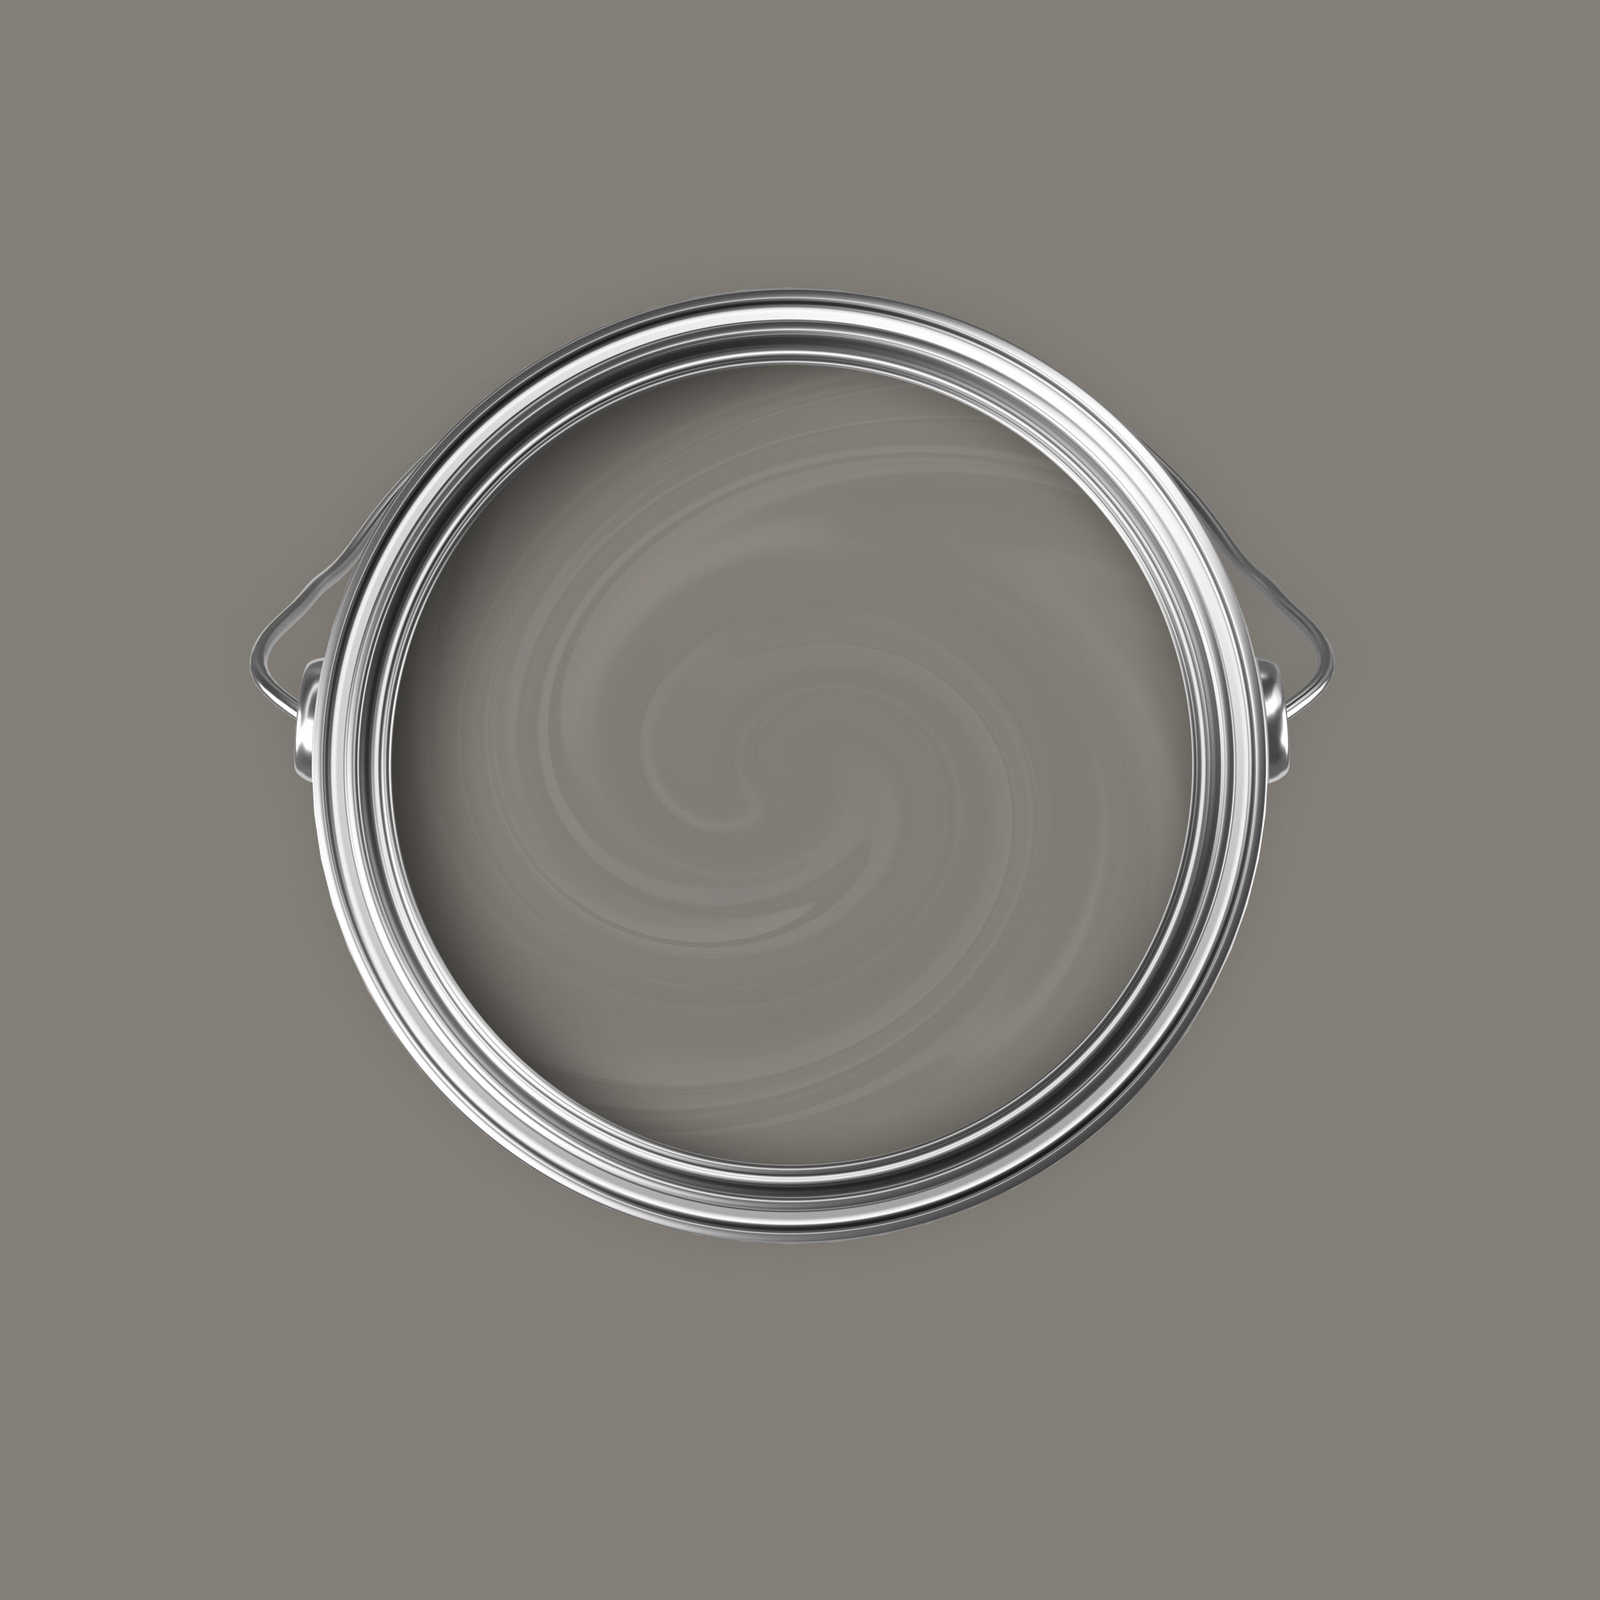             Peinture murale Premium gris béton neutre »Creamy Grey« NW112 – 5 litres
        